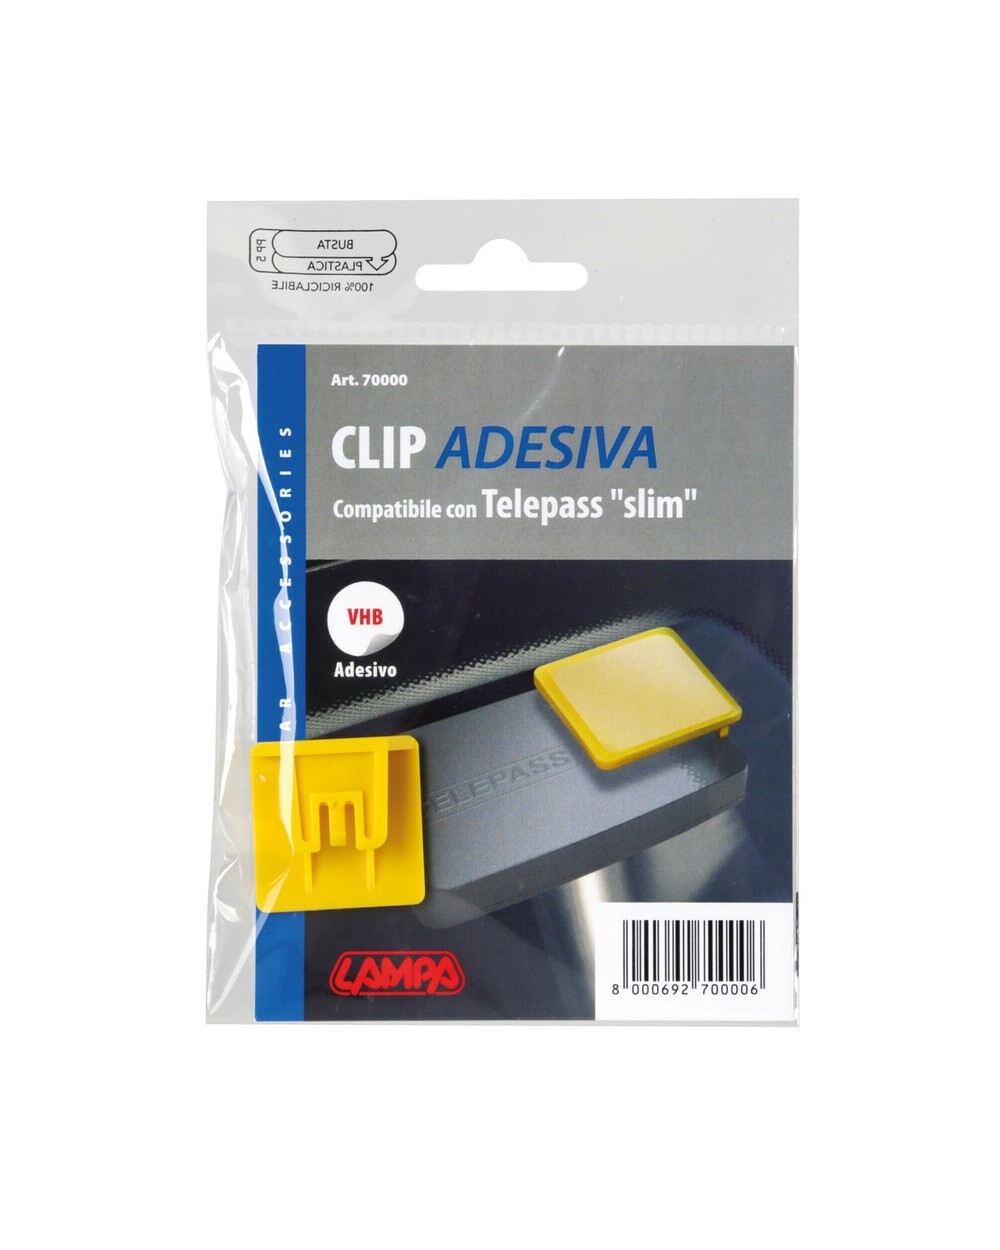 Clip adesiva compatibile con Telepass Slim